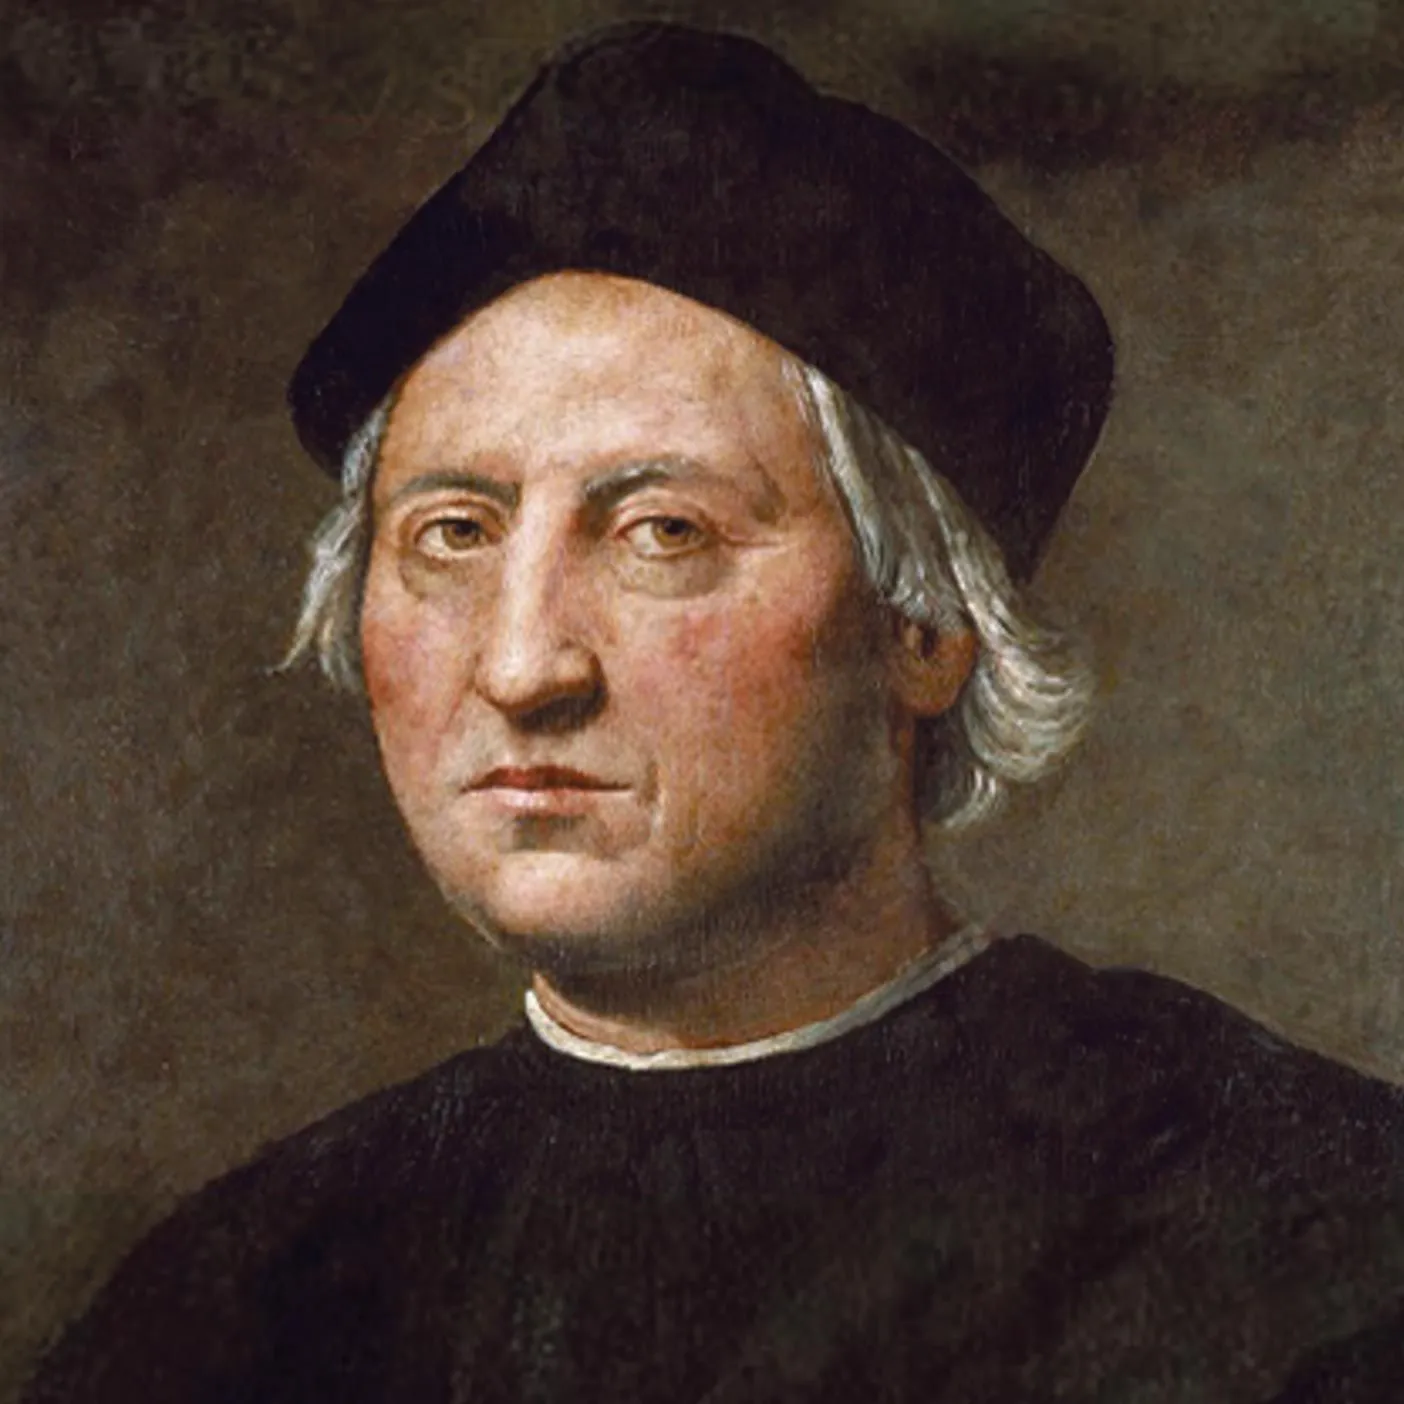 Portrait de Christophe Colomb (vers 1450-1506).